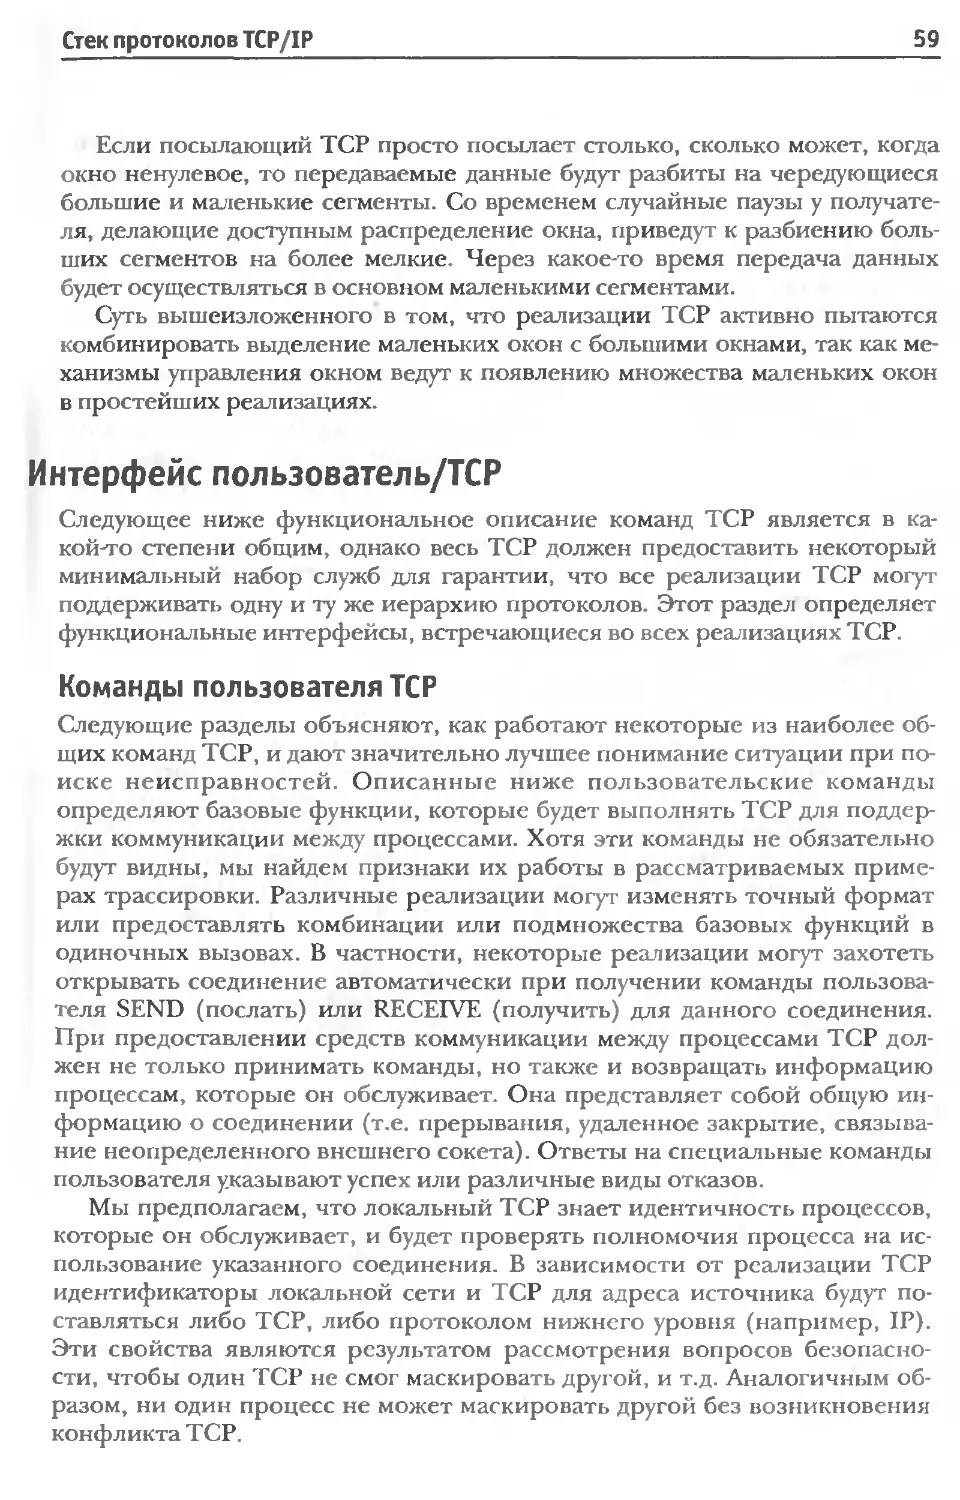 Интерфейс пользователь/TCP